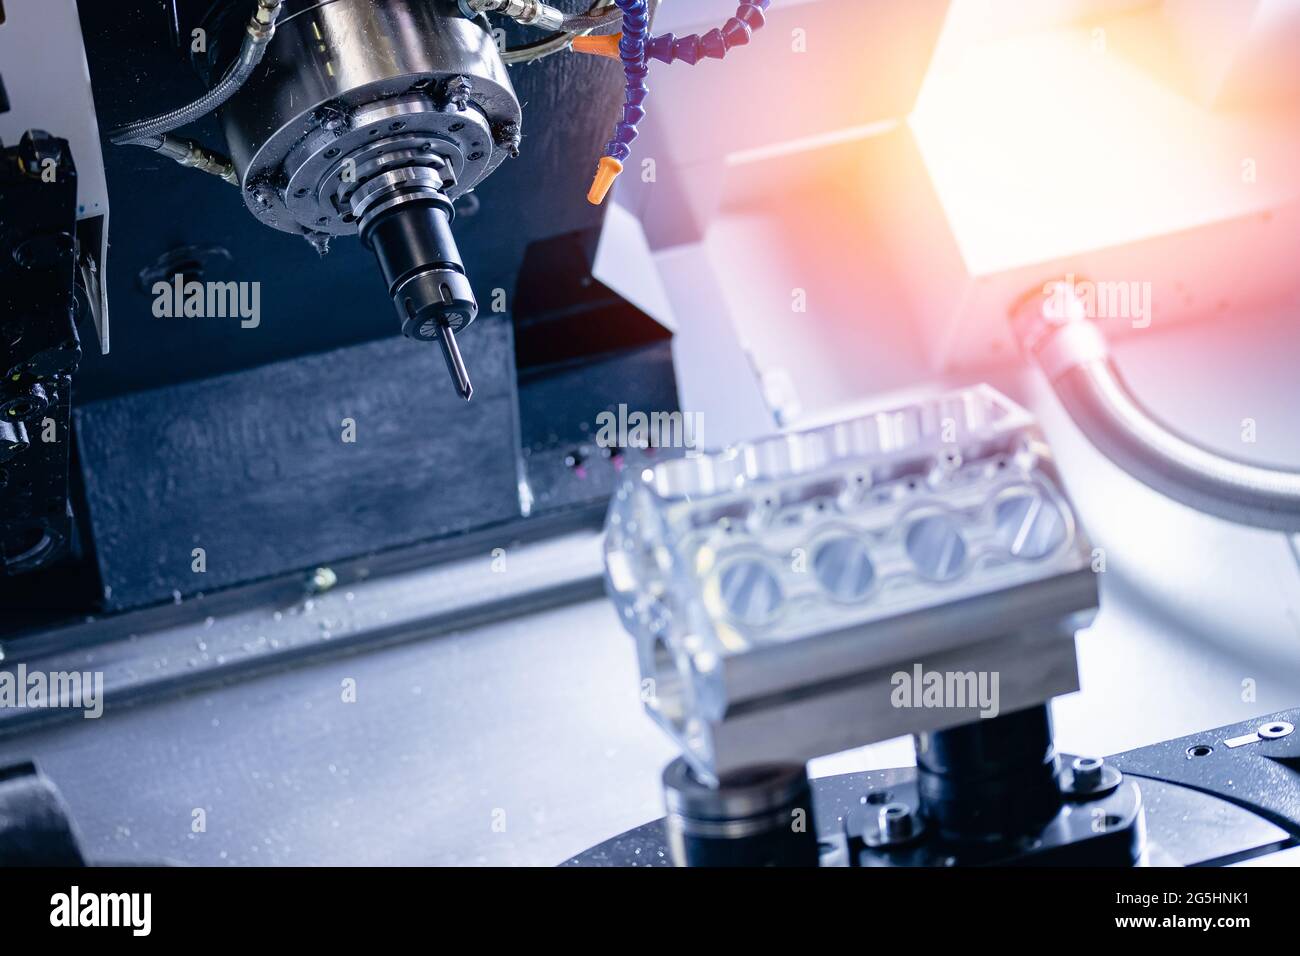 Stahl Fräsen CNC Herstellungsprozess von Zylinderblock für Auto-Motor in  der modernen Fabrik Stockfotografie - Alamy